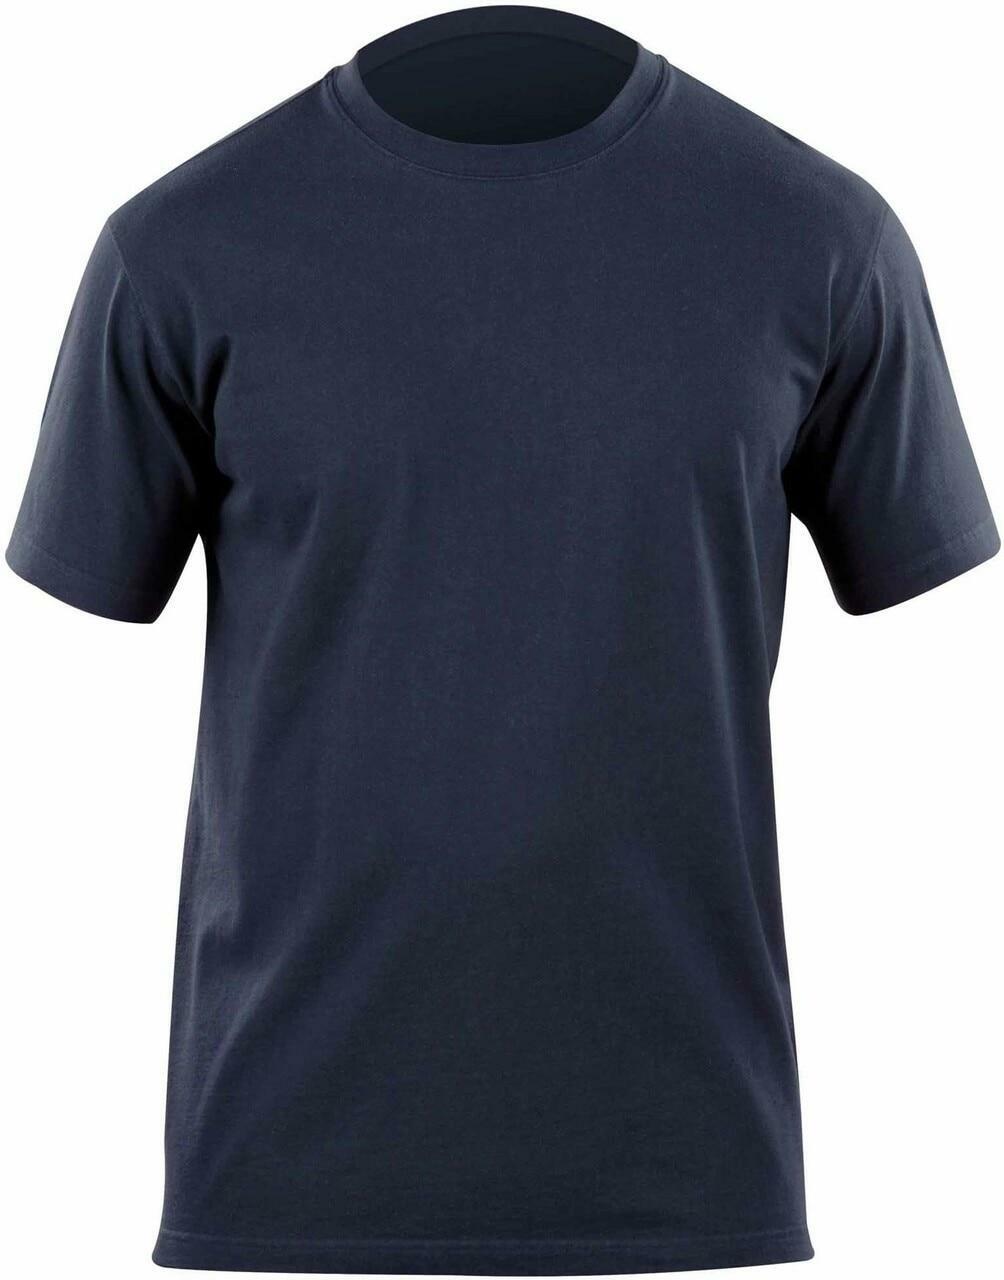 Full Back Support Shirt | Men's Short Sleeve